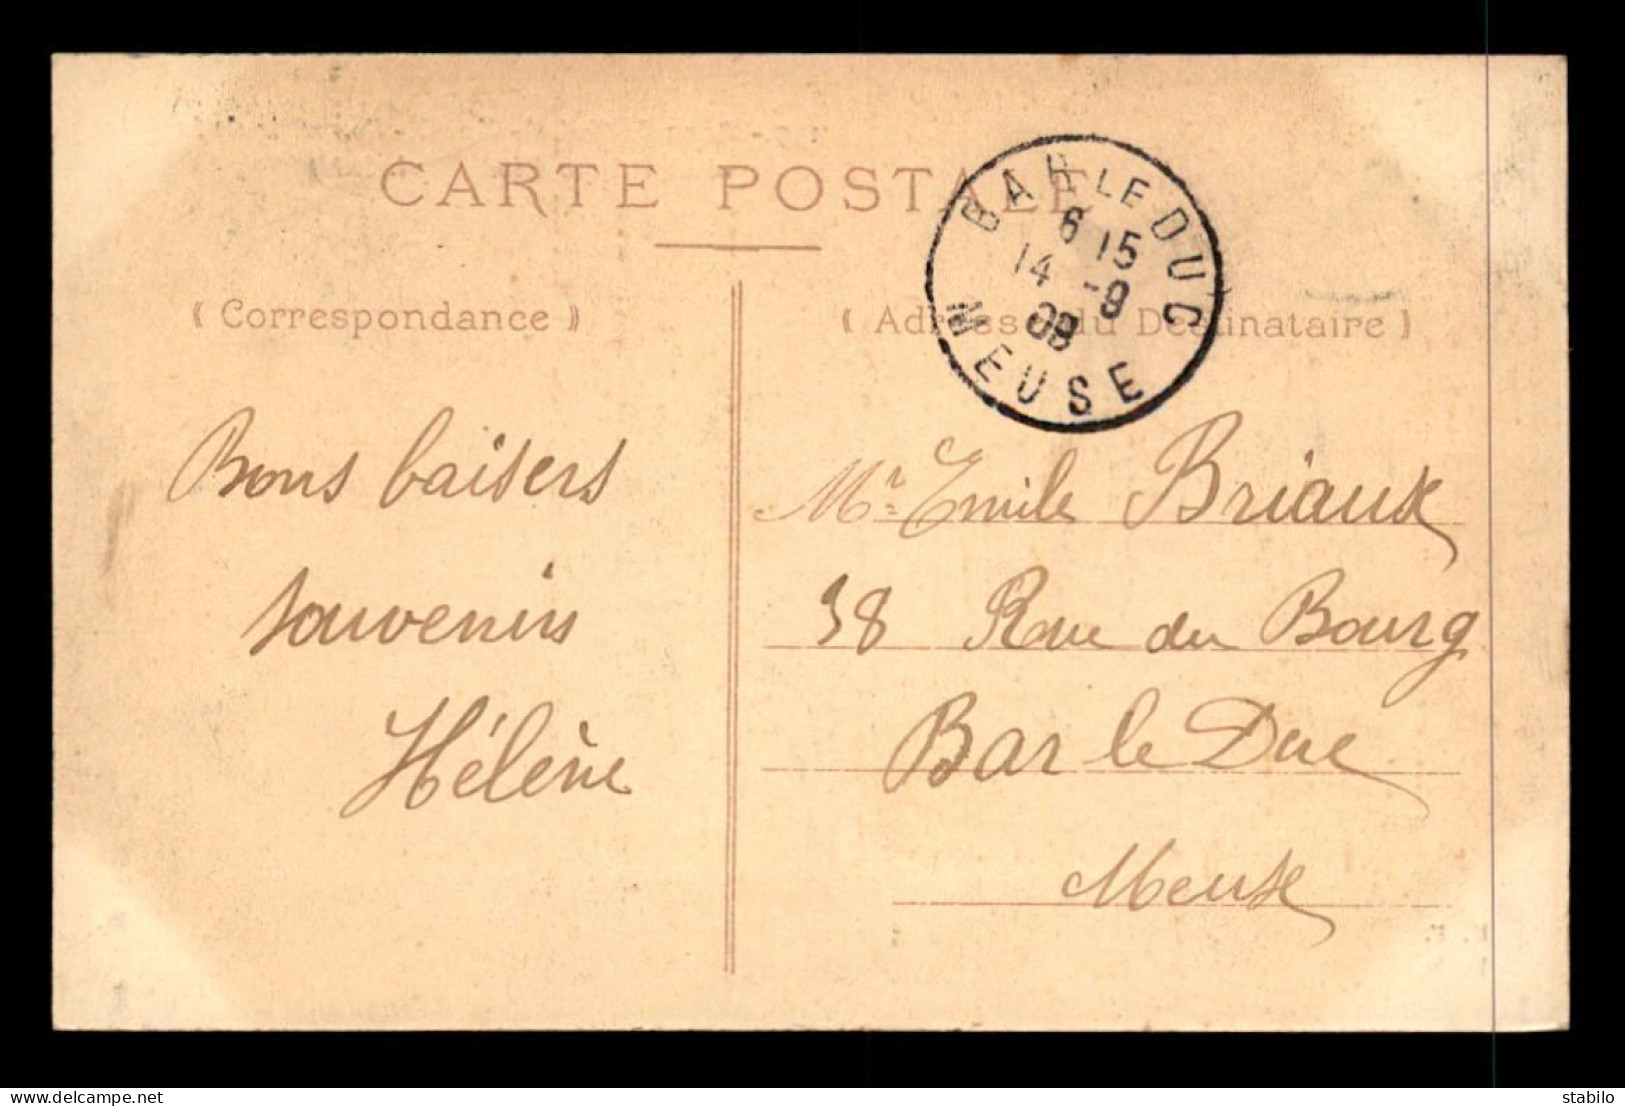 92 - PARC DE ST-CLOUD - SOUVENIR DE LA FETE ET DE L'EXPOSITION DE SEPT 1909 - MANEGE - Saint Cloud